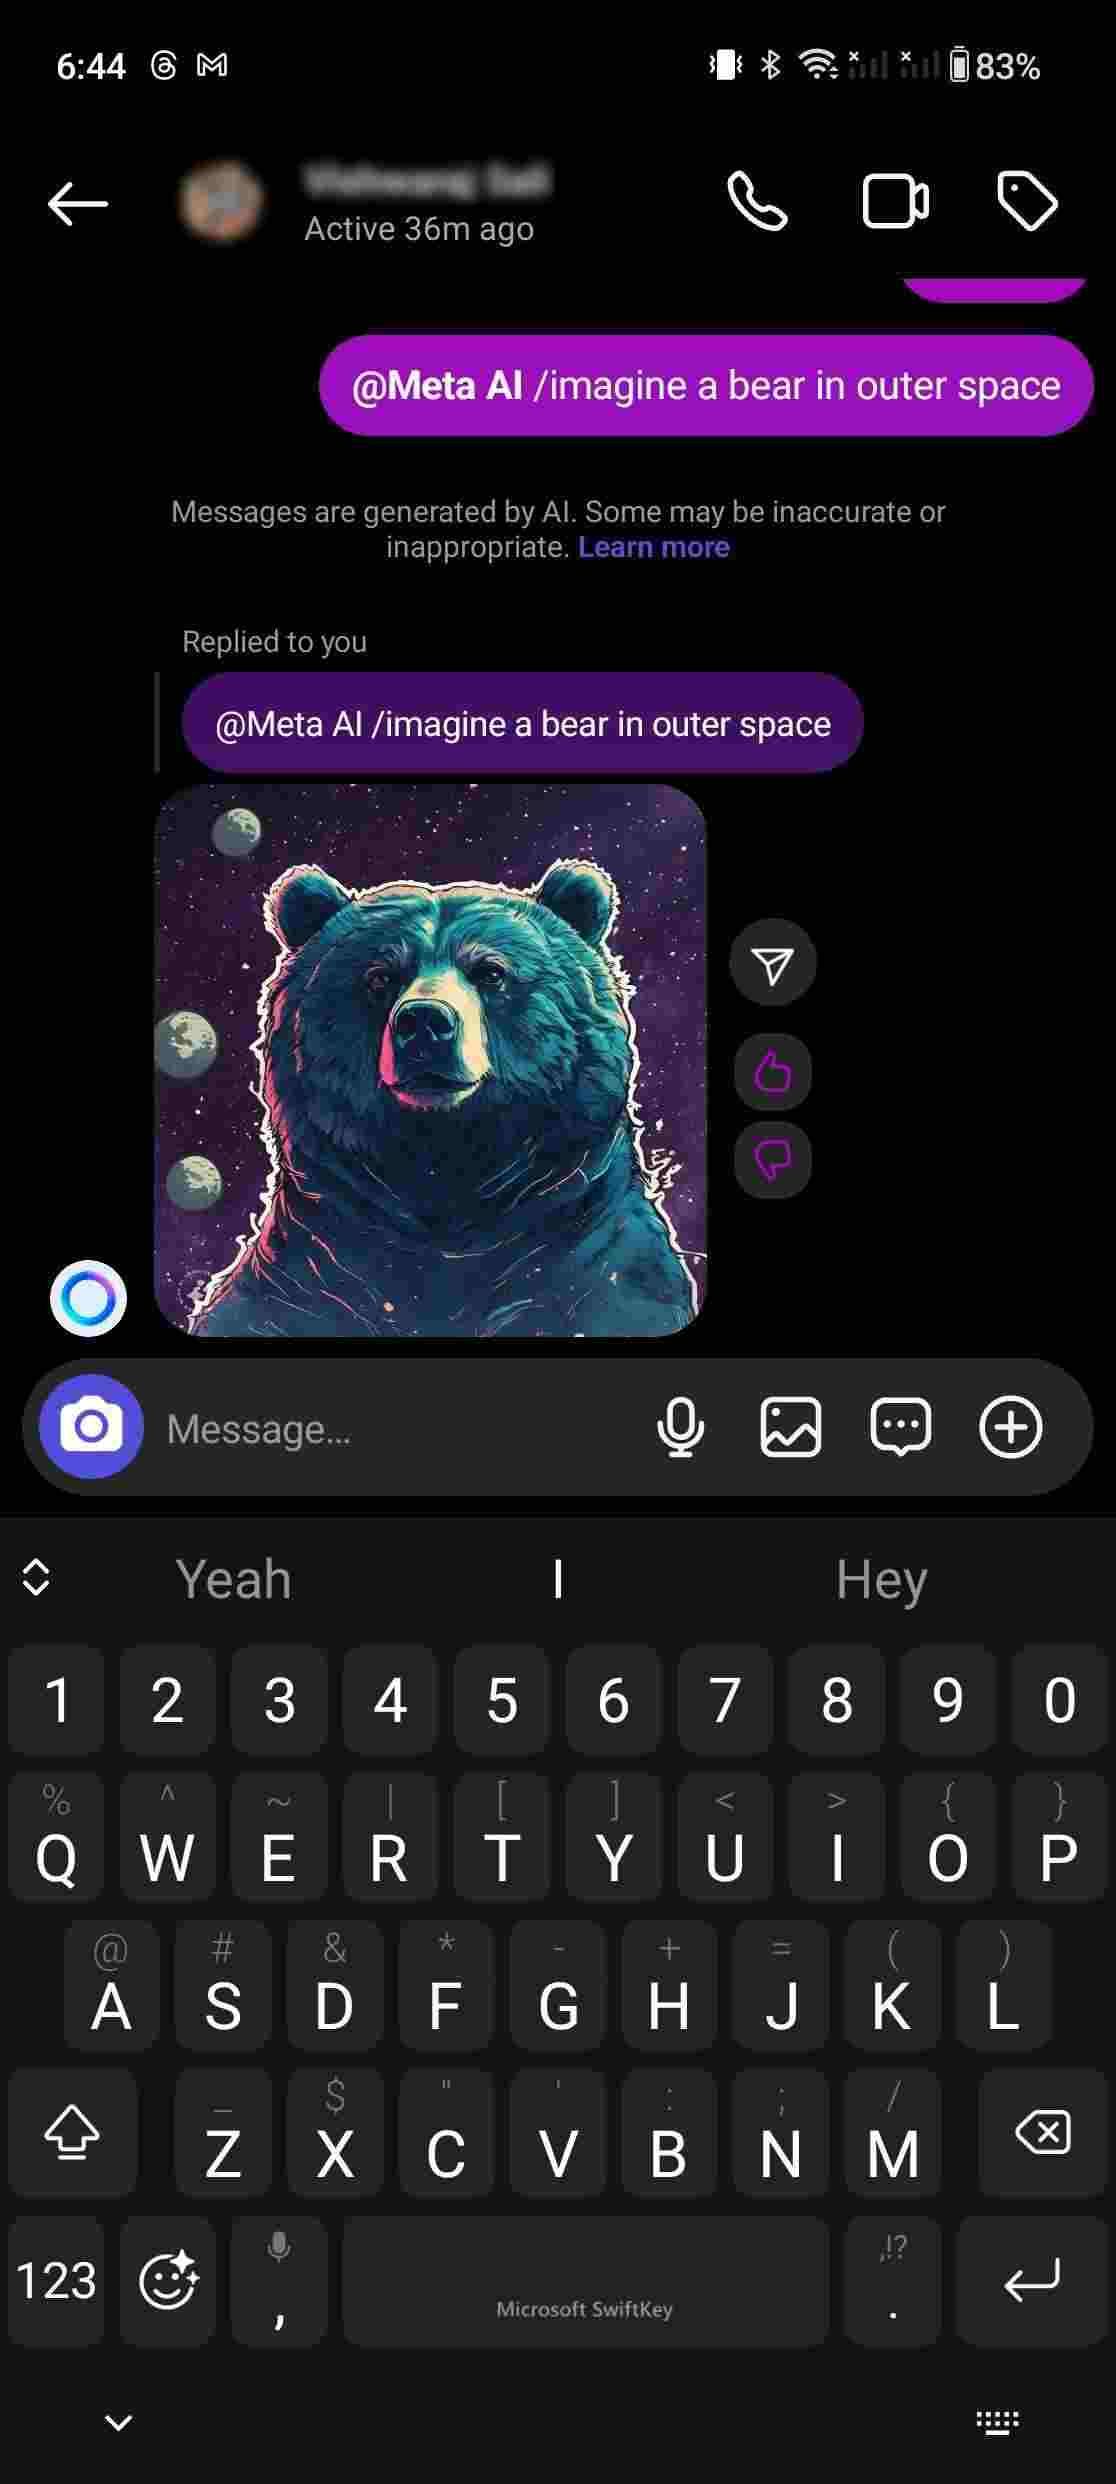 Captura de tela mostrando a imagem de um urso no bate-papo do Instagram, gerada com Meta AI